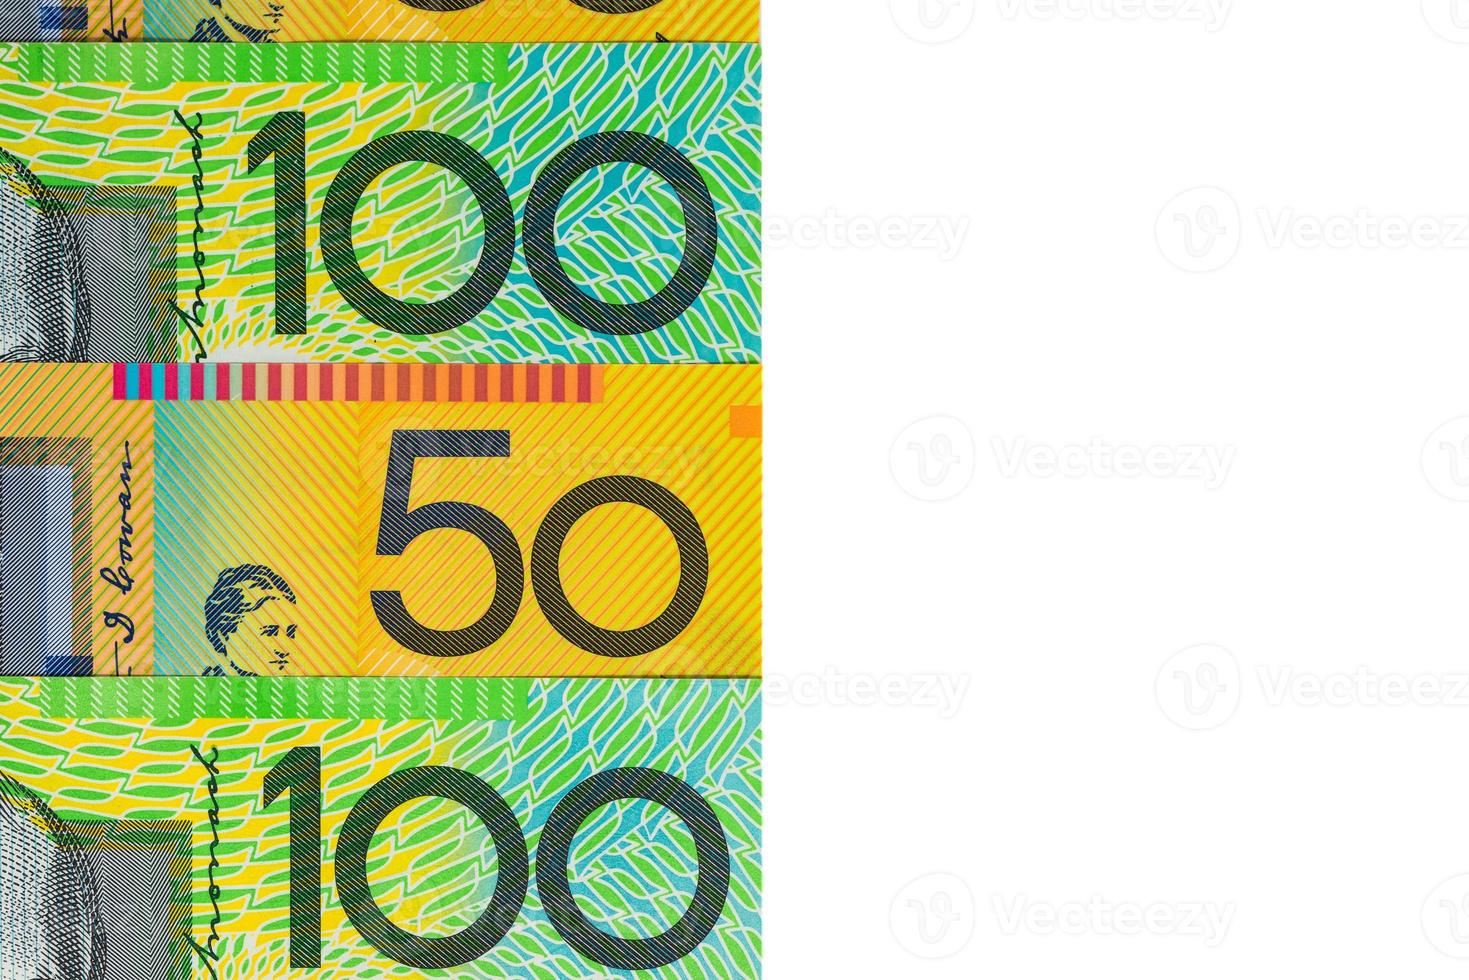 australisk valuta - hundra och femtio dollar sedlar foto